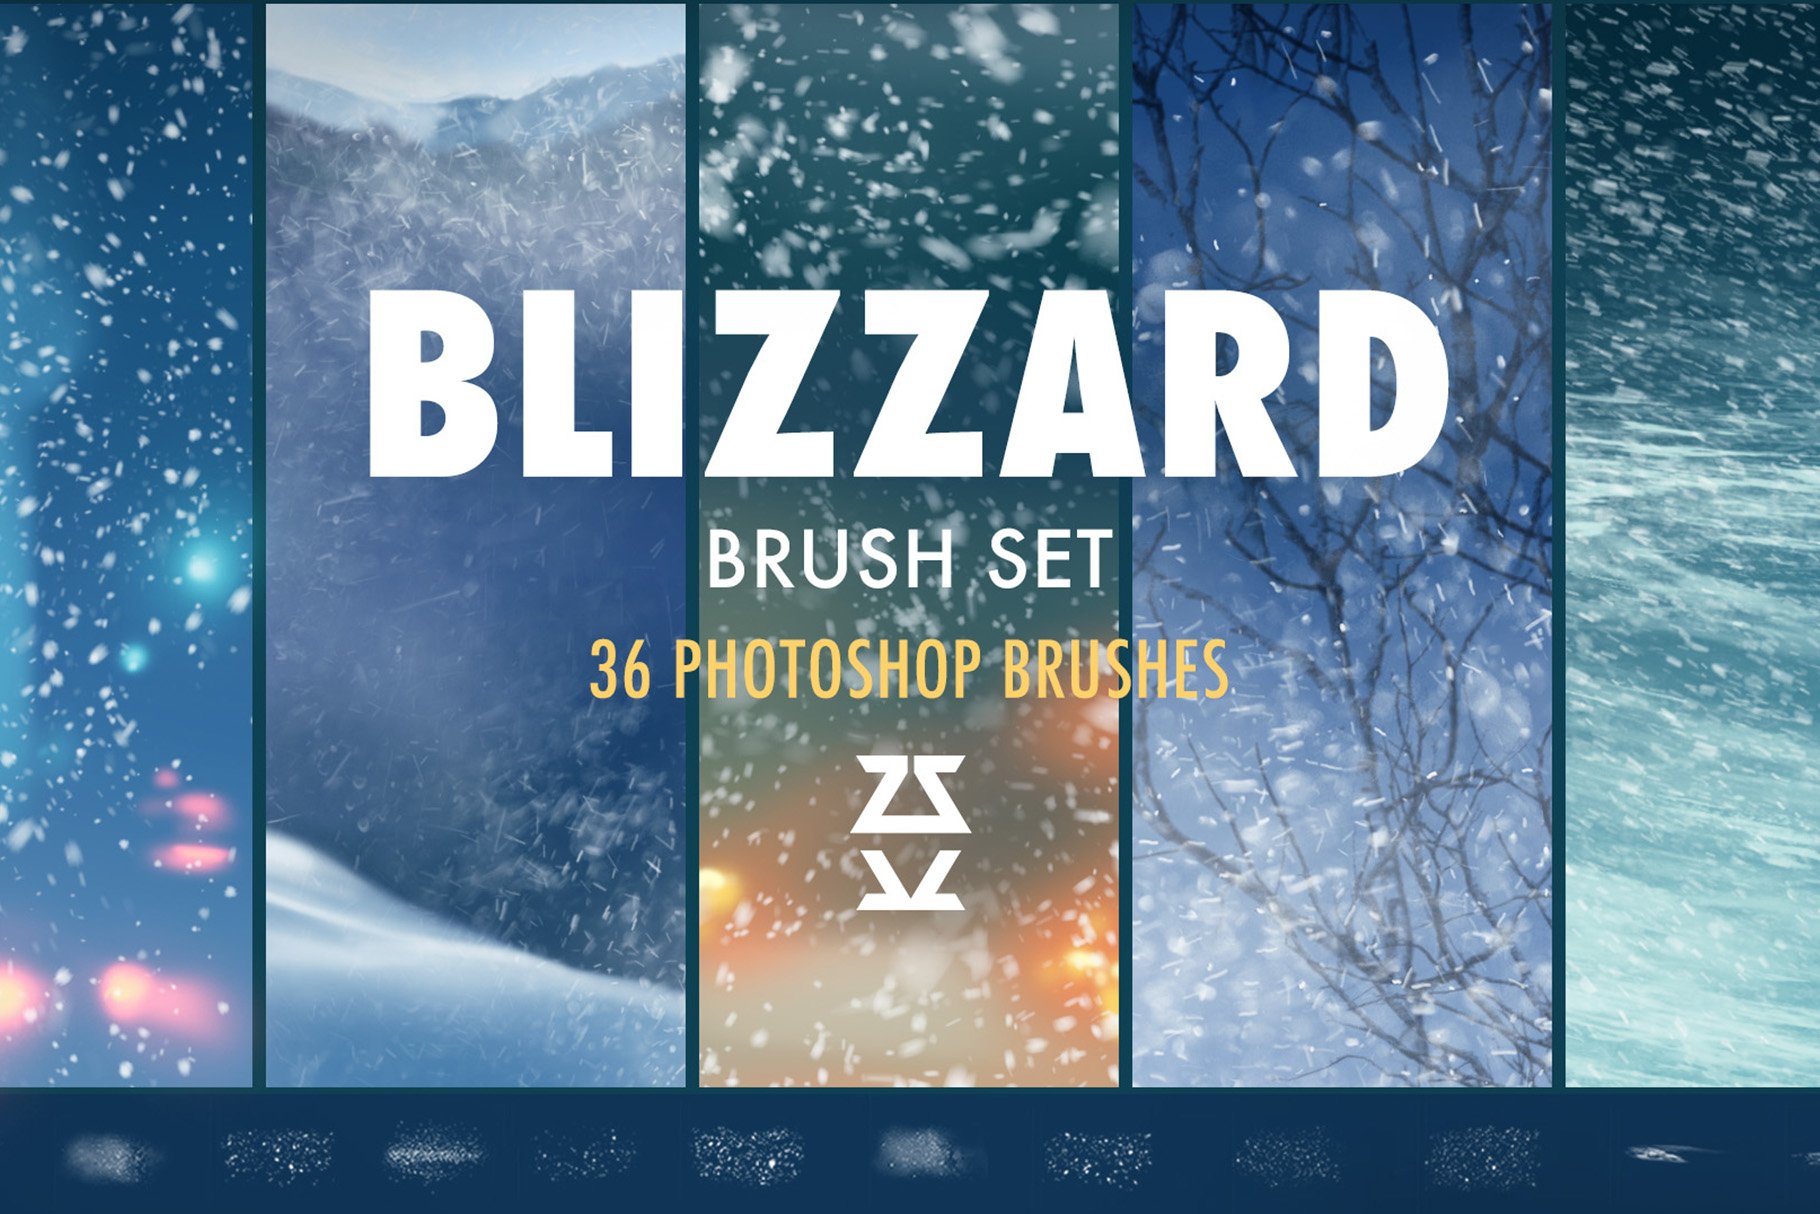 Blizzard brush setcover image.